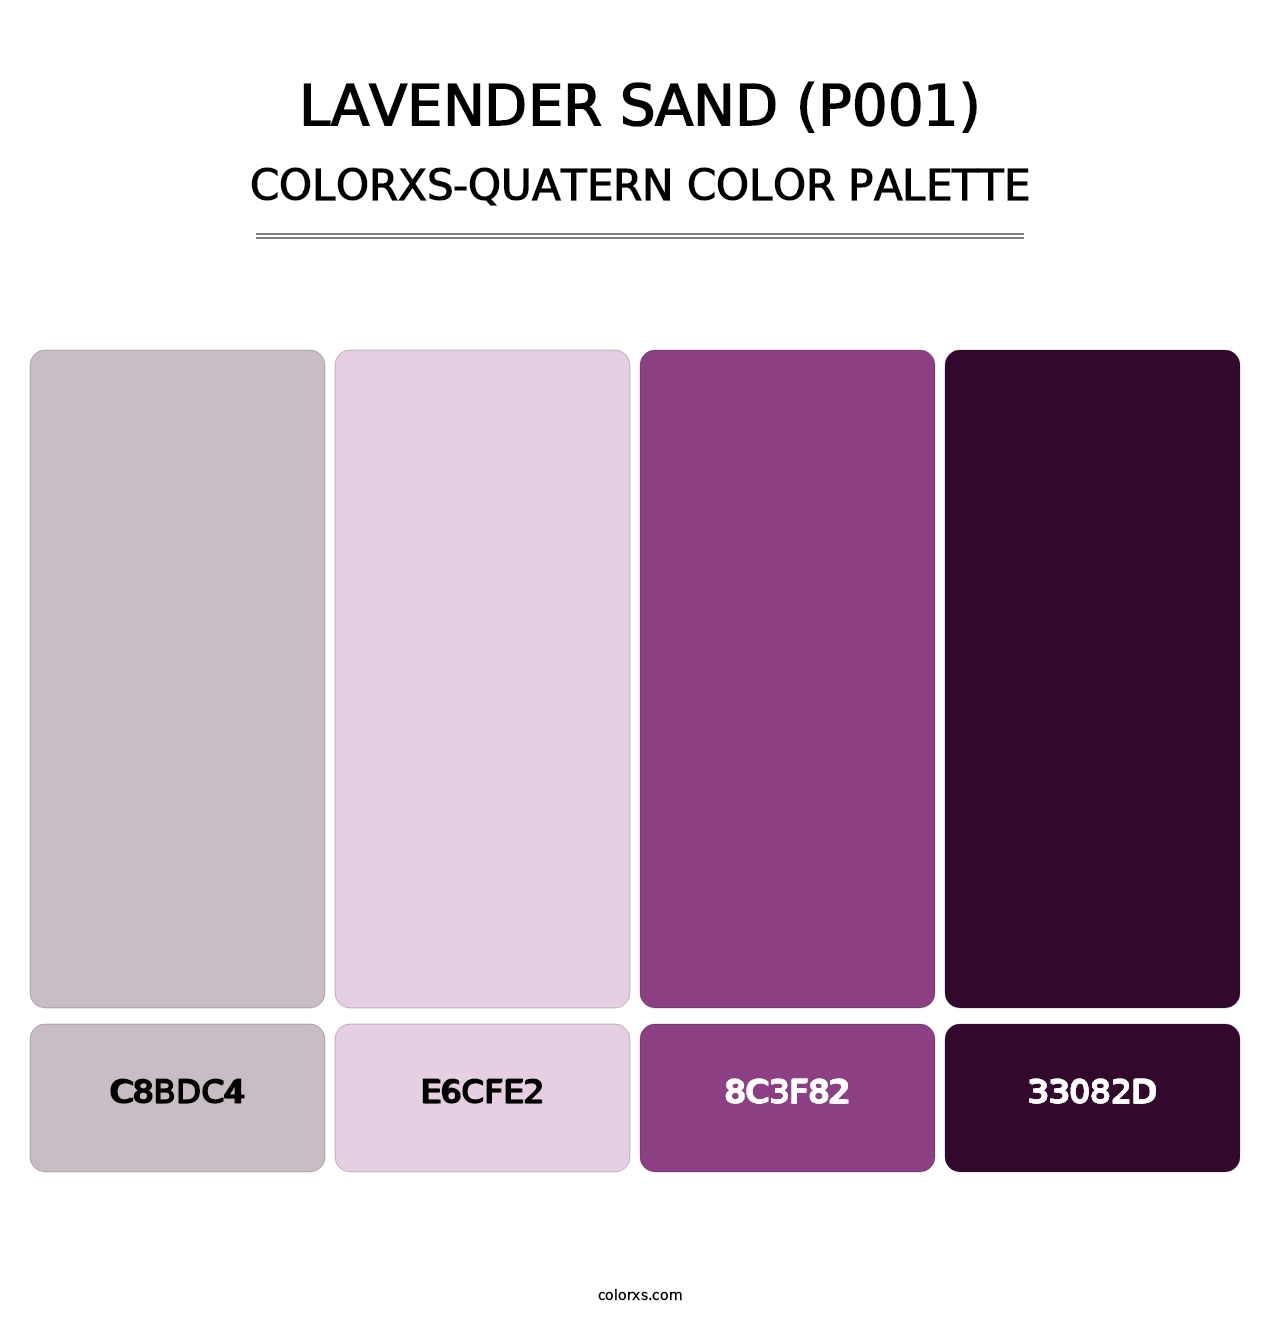 Lavender Sand (P001) - Colorxs Quatern Palette